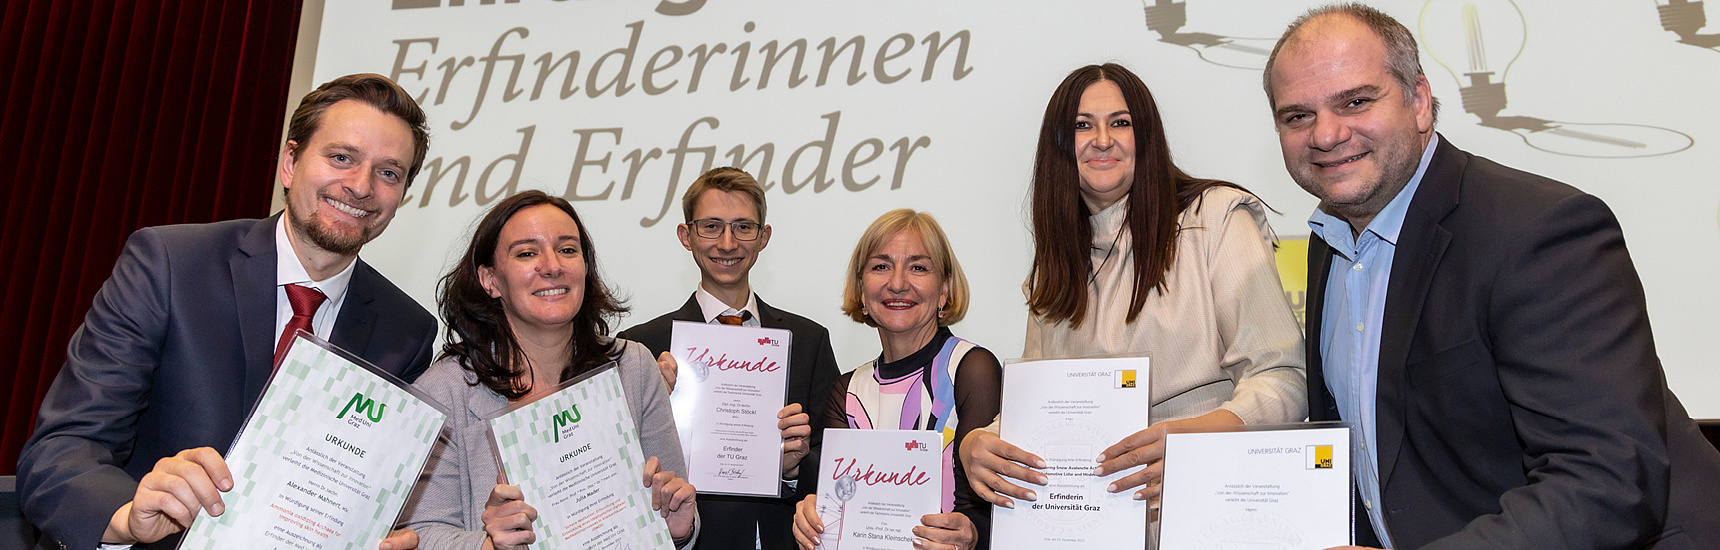 Auszeichnung für Erfinder*innen der Grazer Universitäten_Foto:Lunghammer